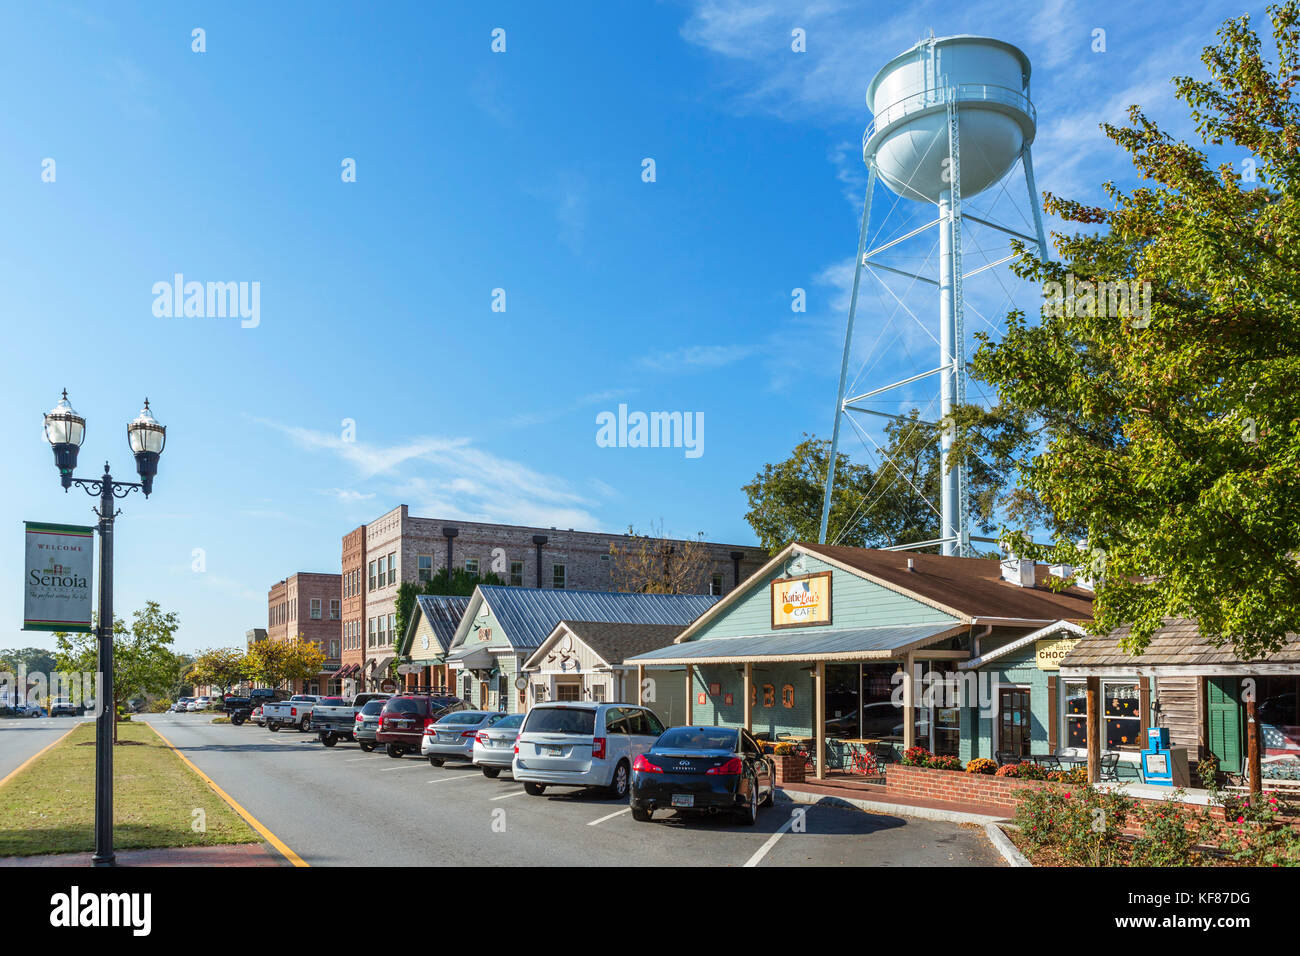 Main Street, Senoia, Georgia, Stati Uniti d'America. Senoia è la posizione per la città di Woodbury nella serie TV The Walking Dead. Foto Stock